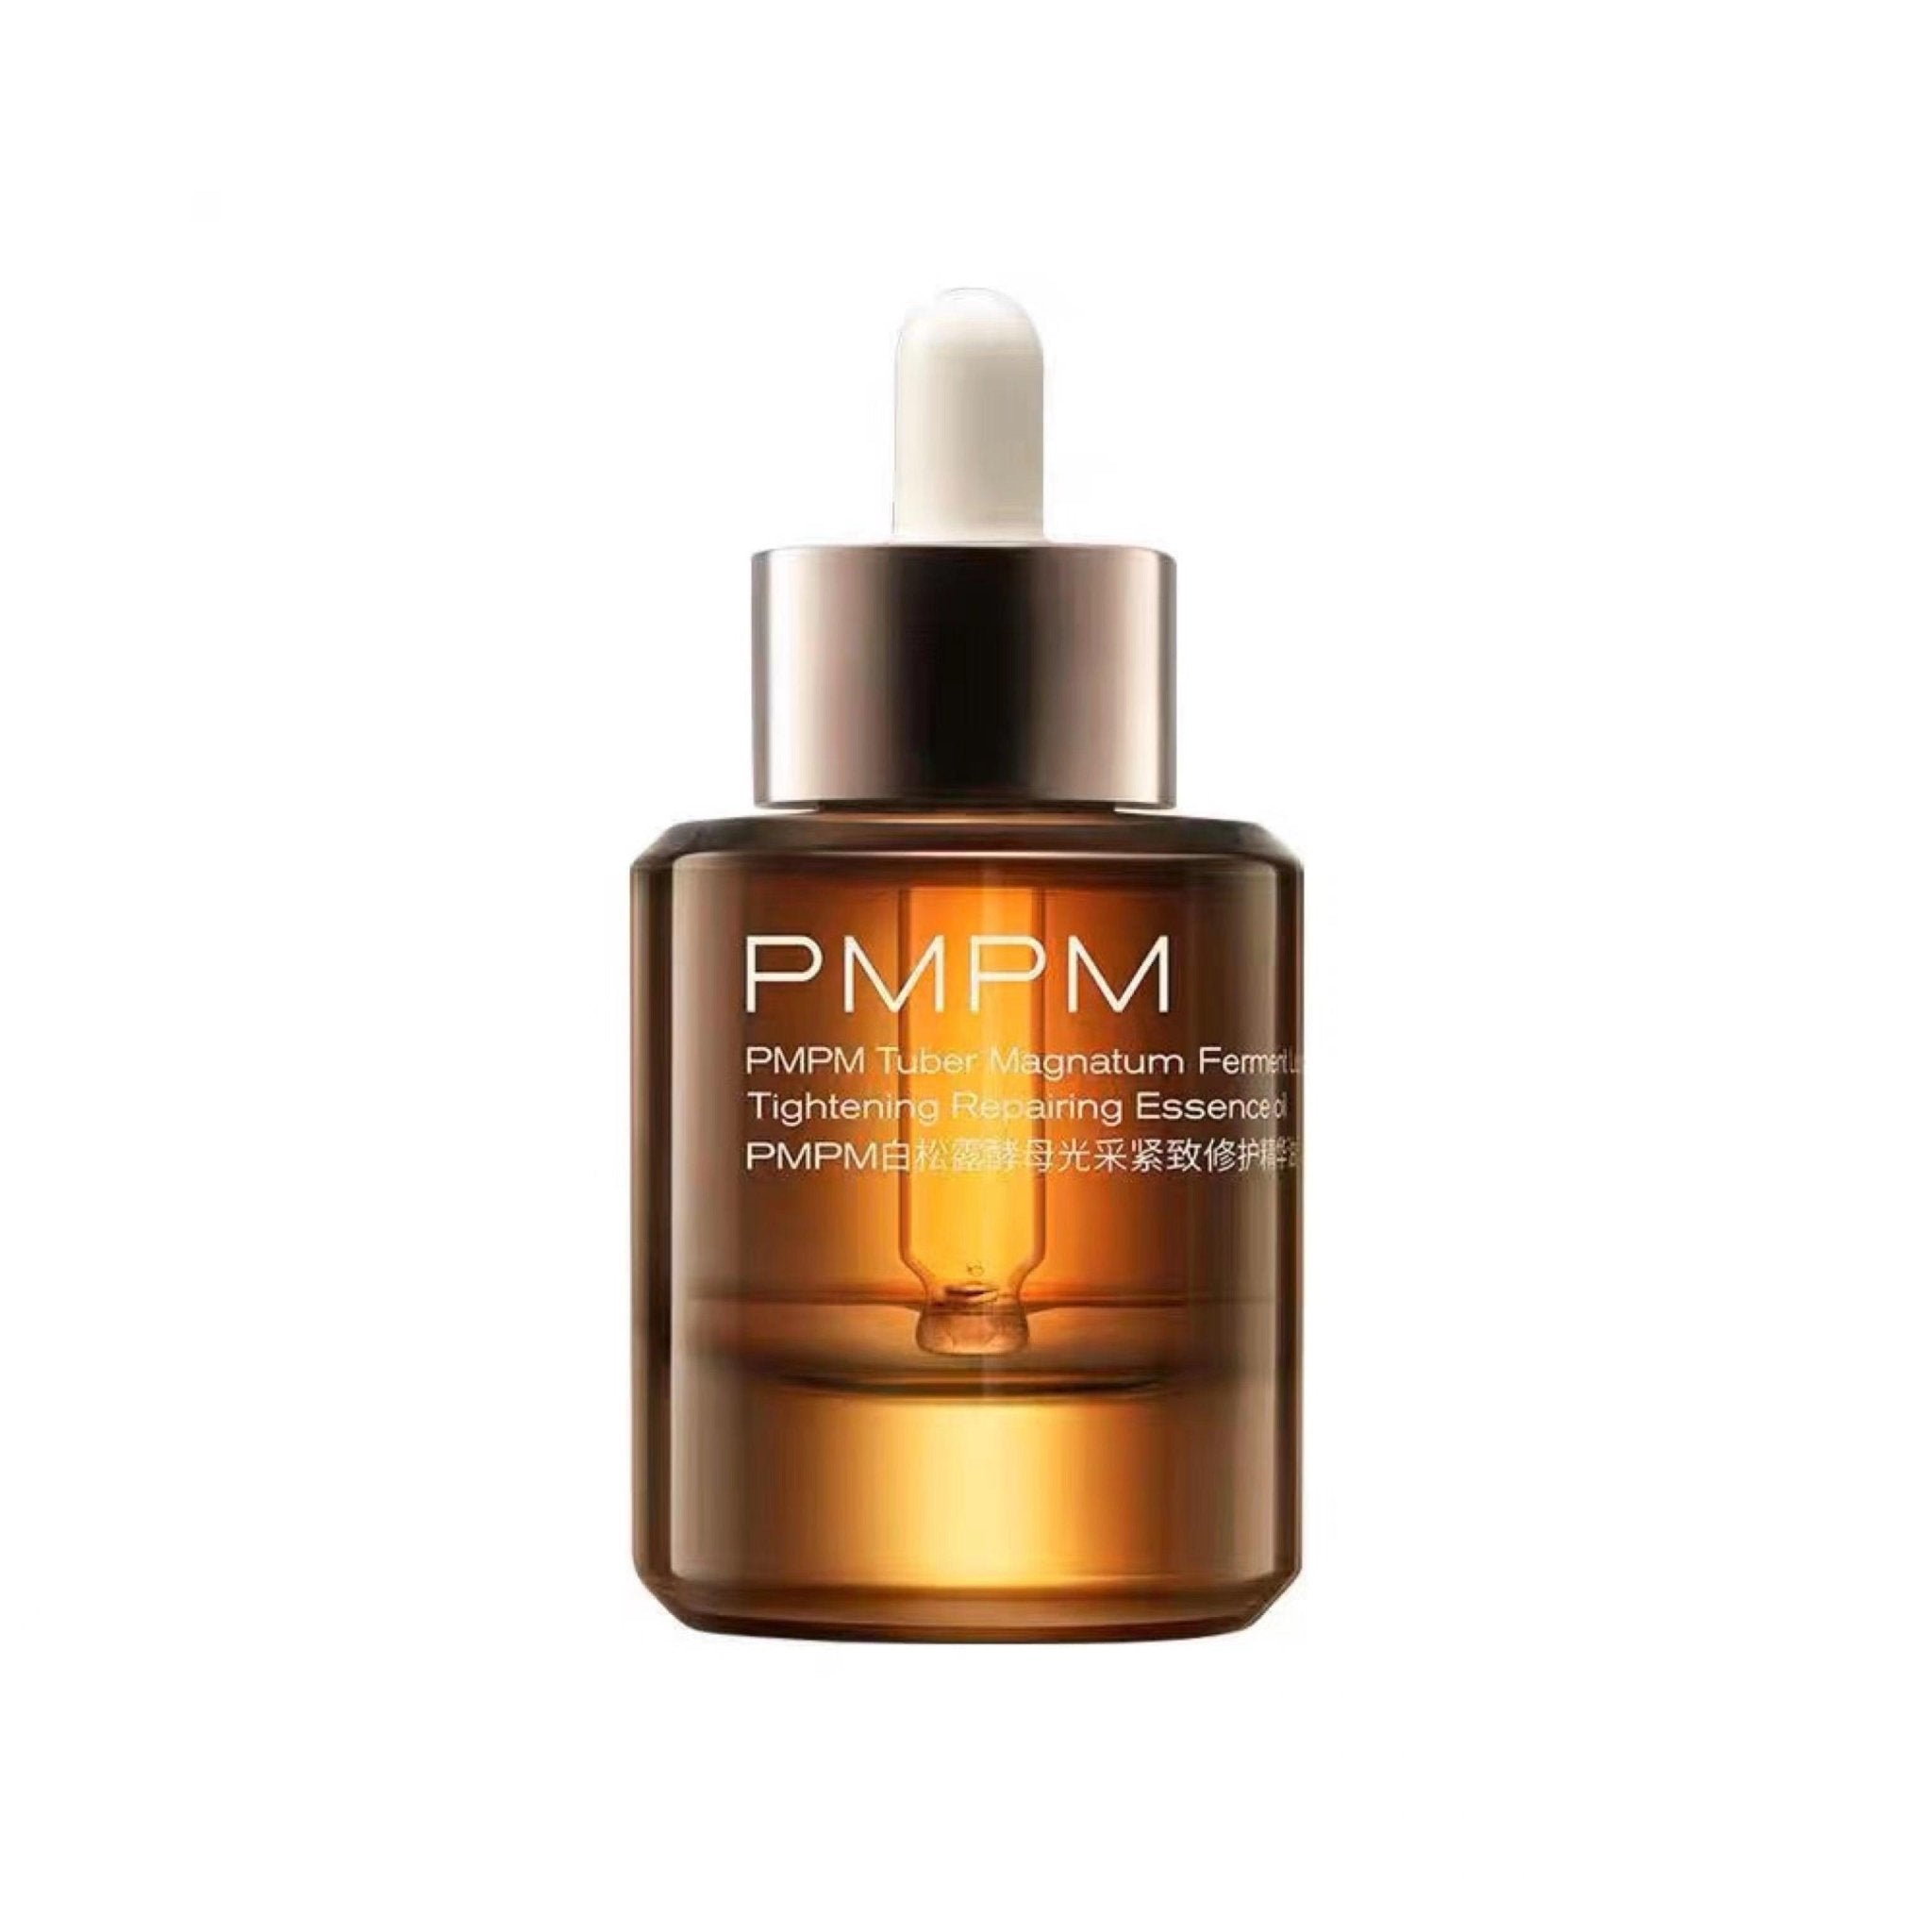 PMPM Tuber Magnatum Ferment Luminous Tightening Repairing Essence Oil Anti-Aging PM033 - Chic Decent